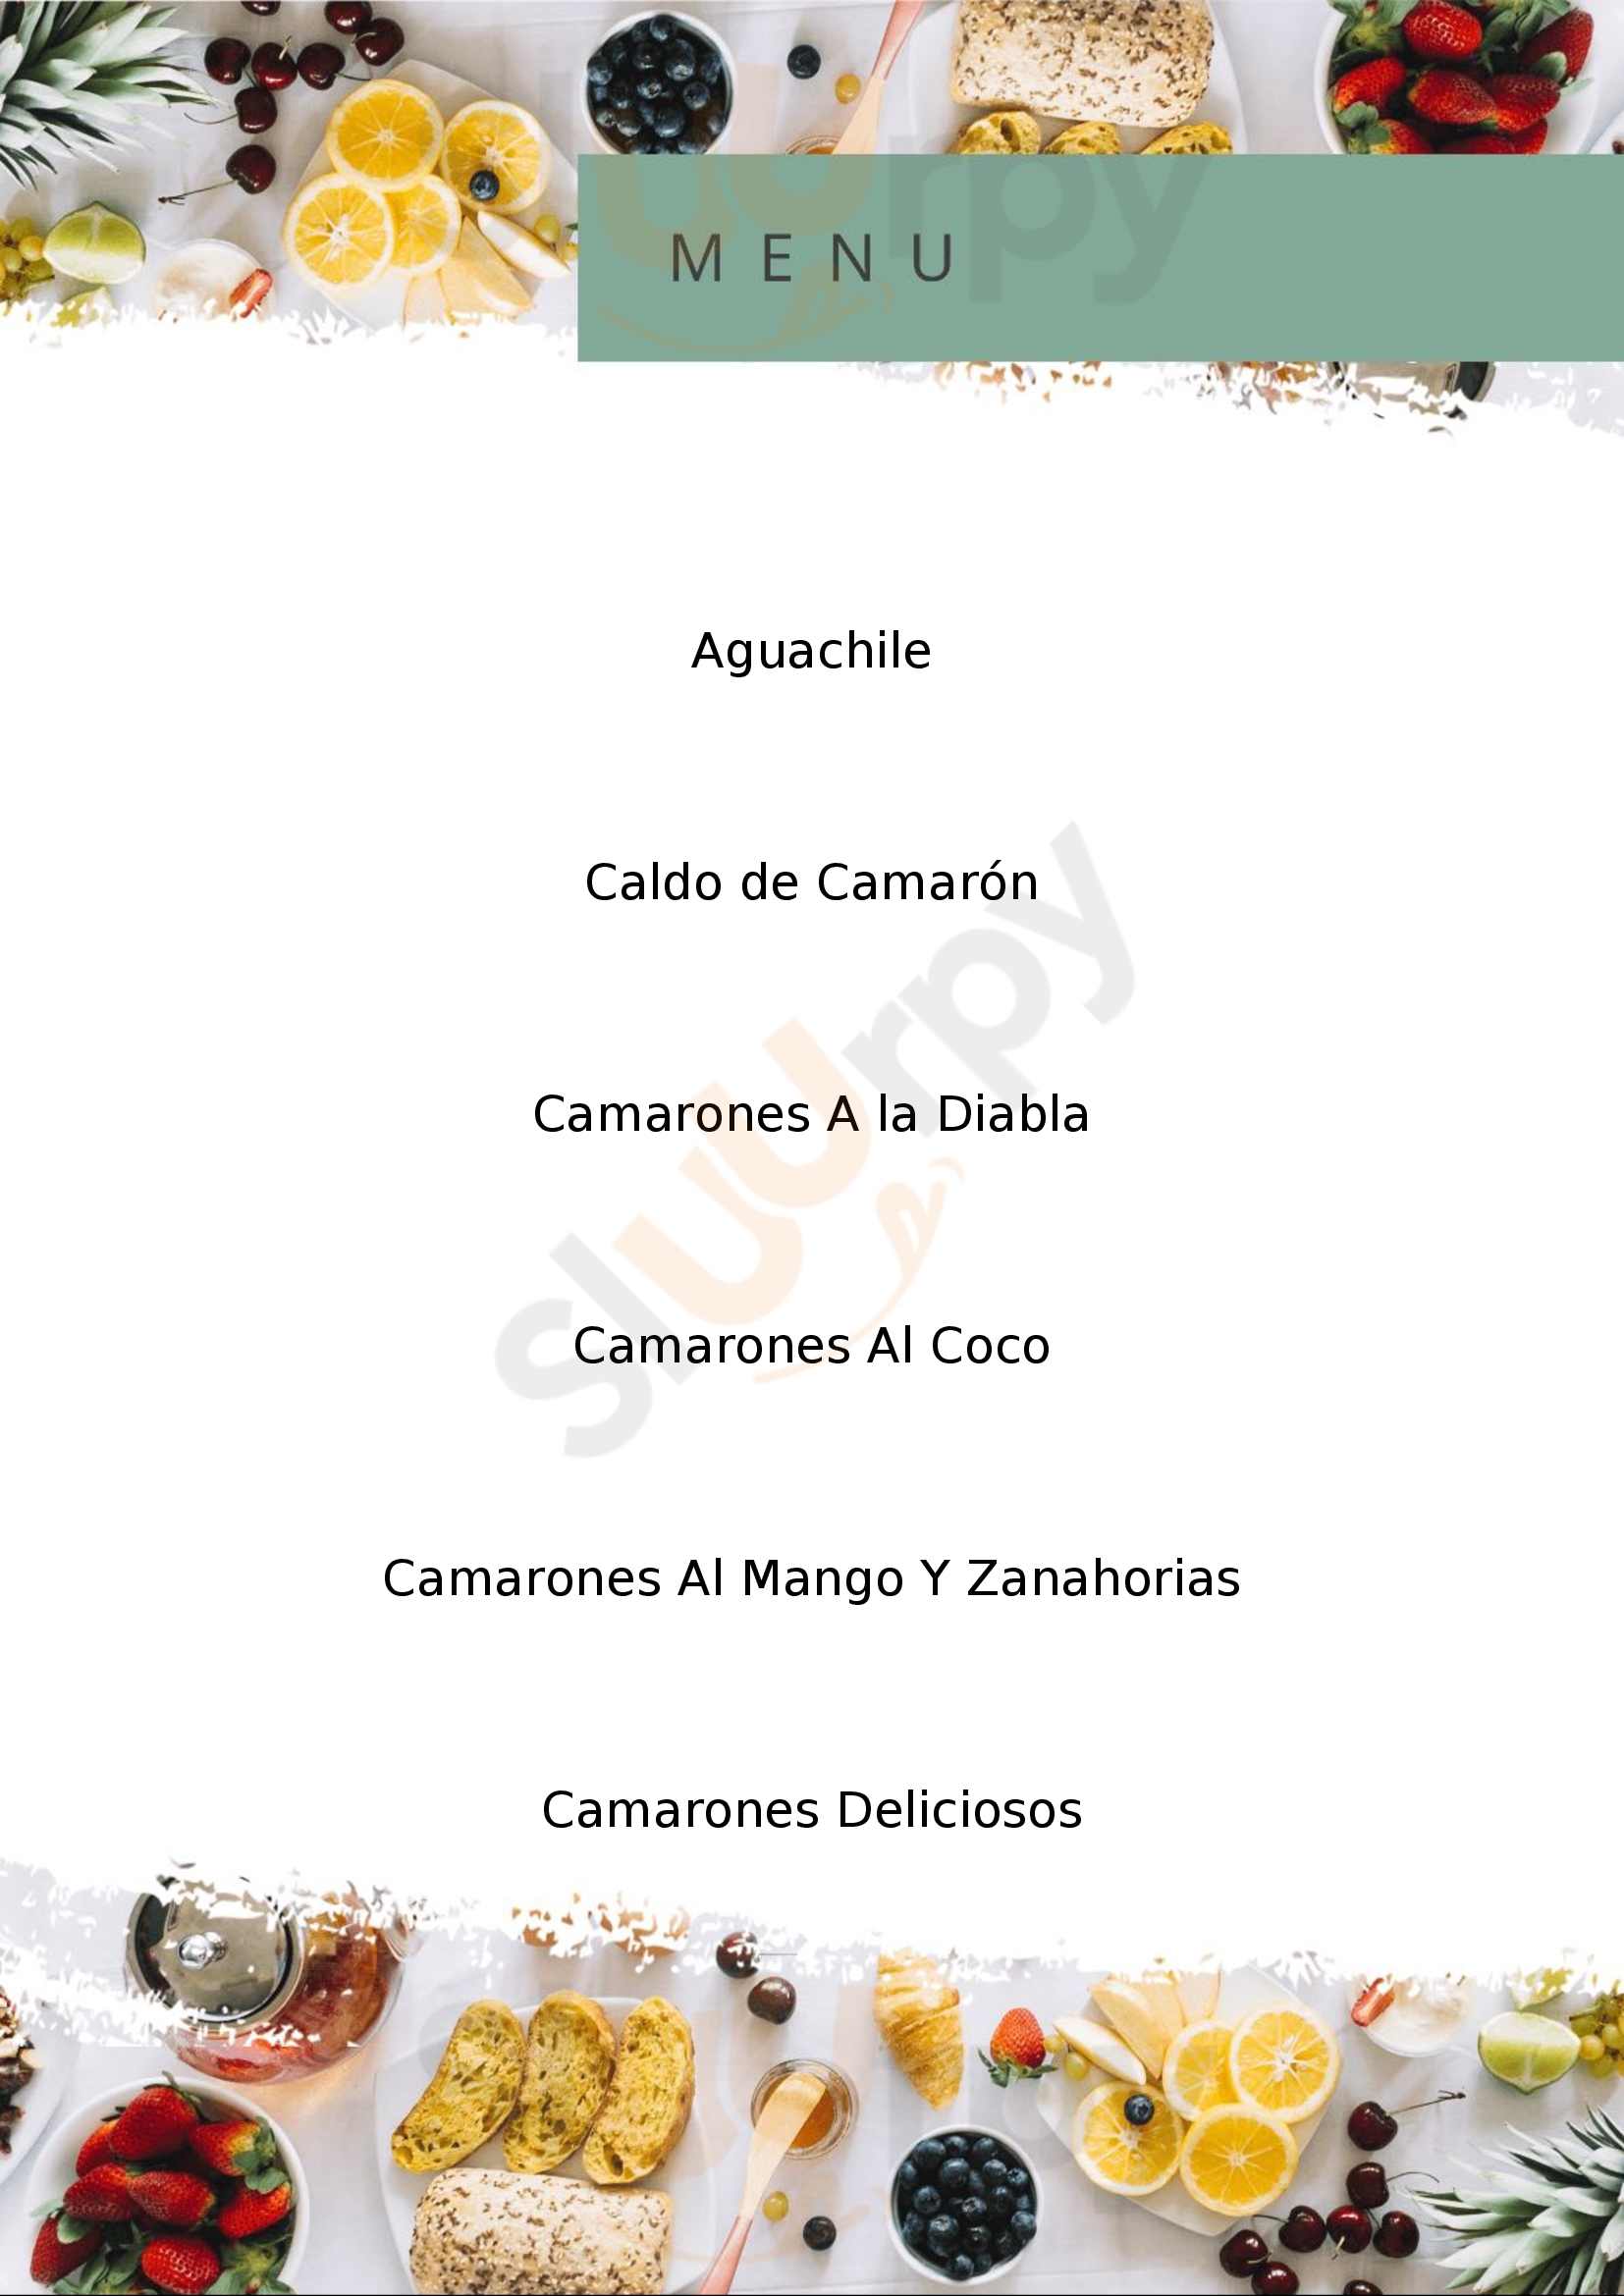 Mariscos El Tiburón De La Costa Sucursal Morelia Morelia Menu - 1